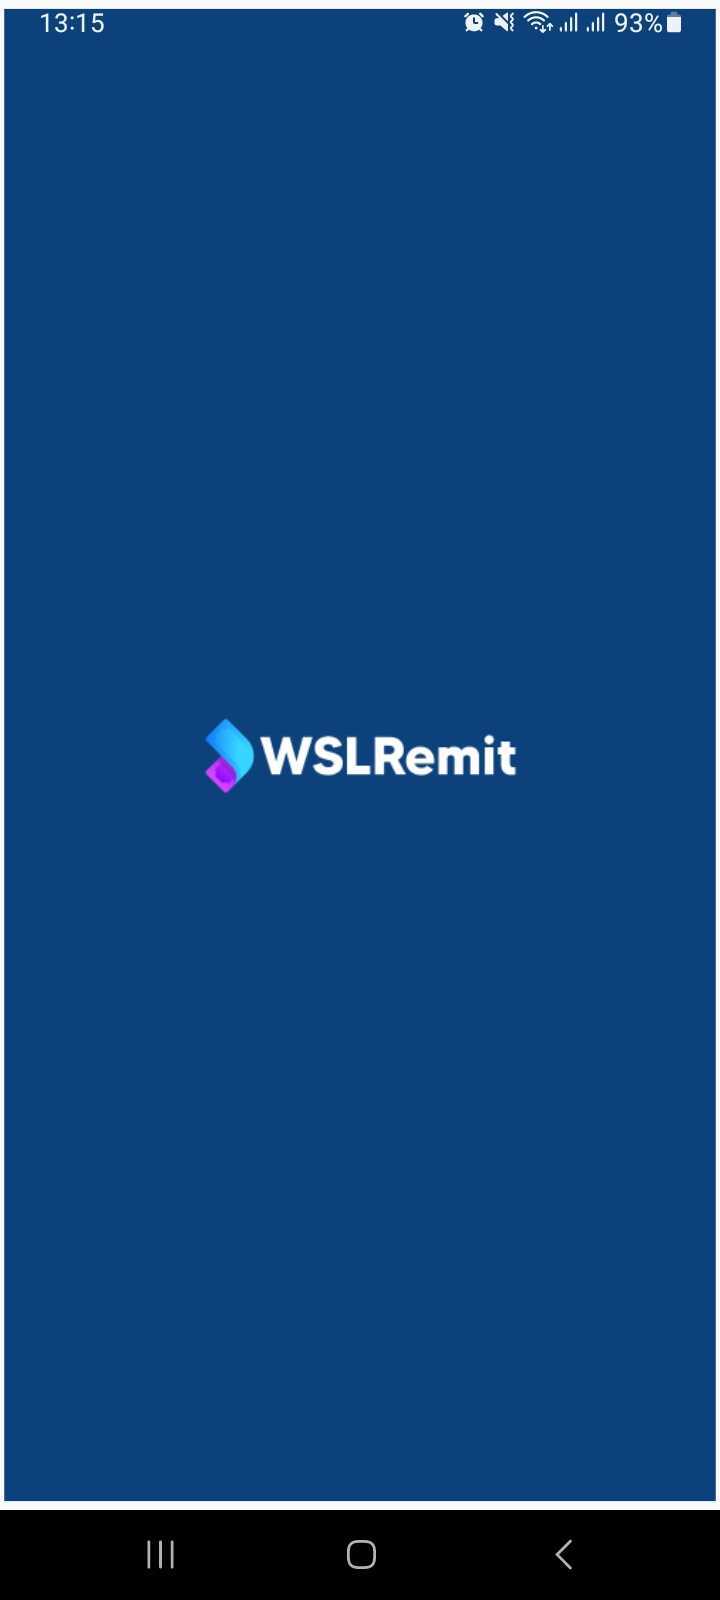 wsl remit app